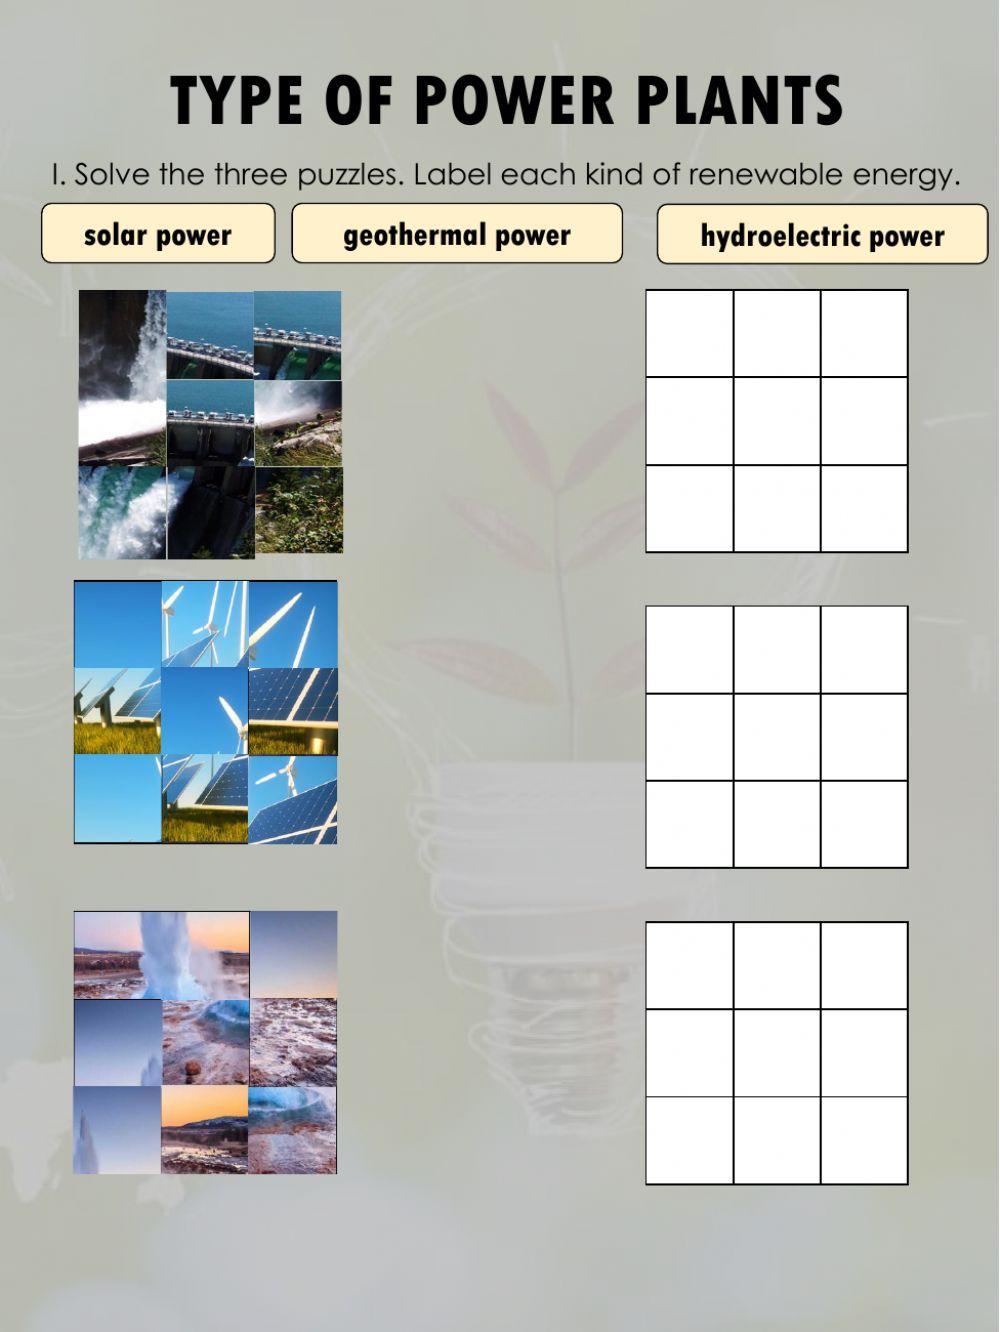 Type of Power Plants